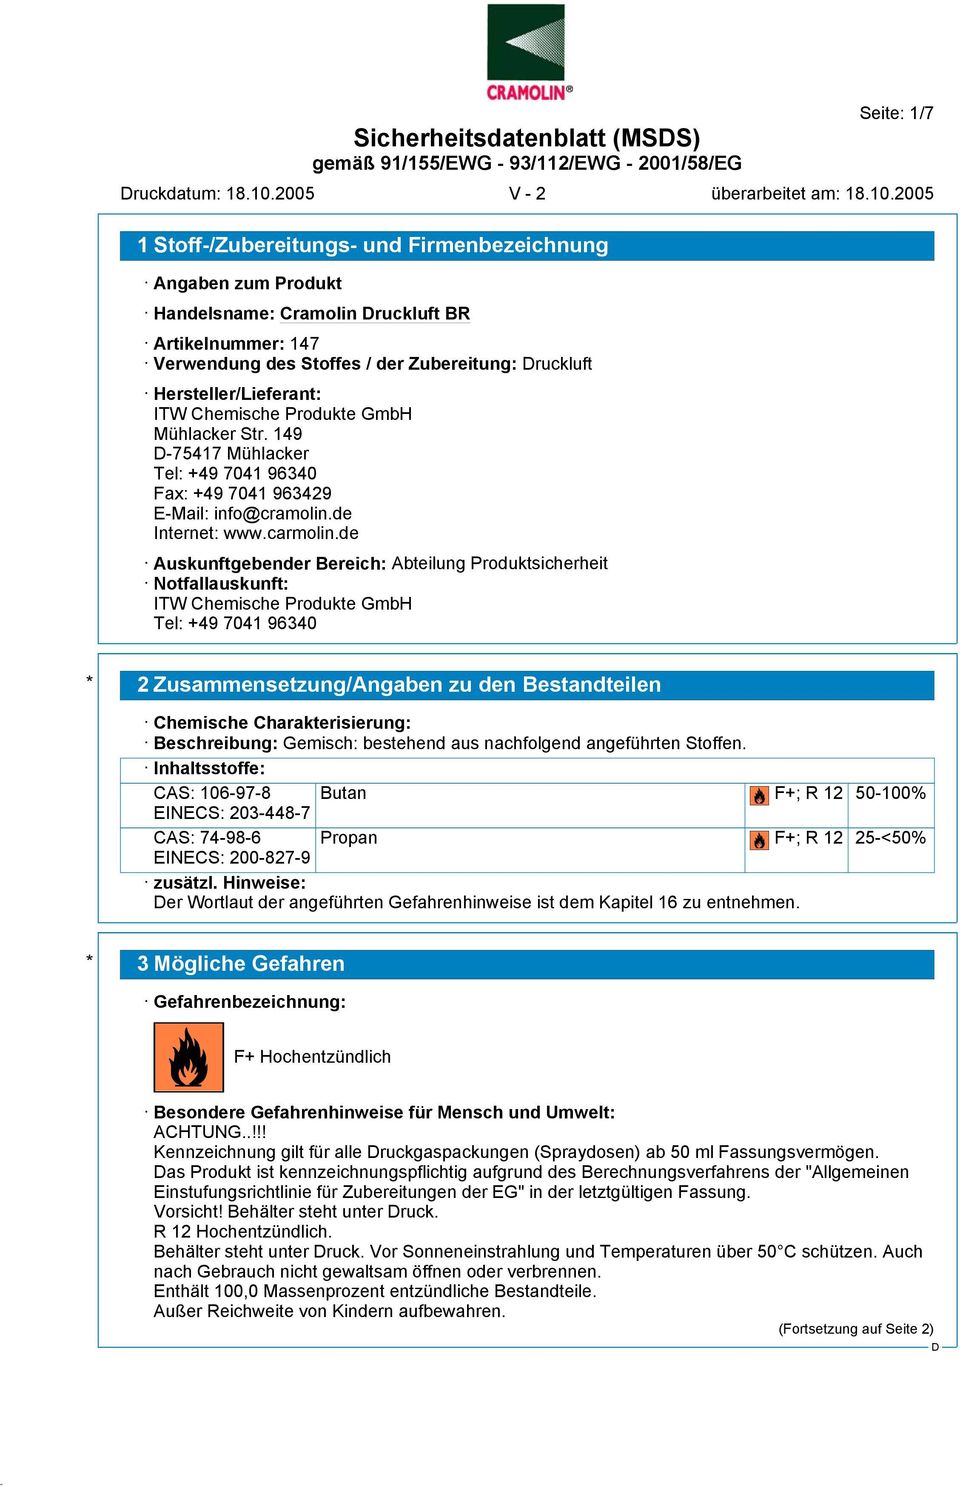 Hersteller/Lieferant: ITW Chemische Produkte GmbH Mühlacker Str. 149-75417 Mühlacker Tel: +49 7041 96340 Fax: +49 7041 963429 E-Mail: info@cramolin.de Internet: www.carmolin.